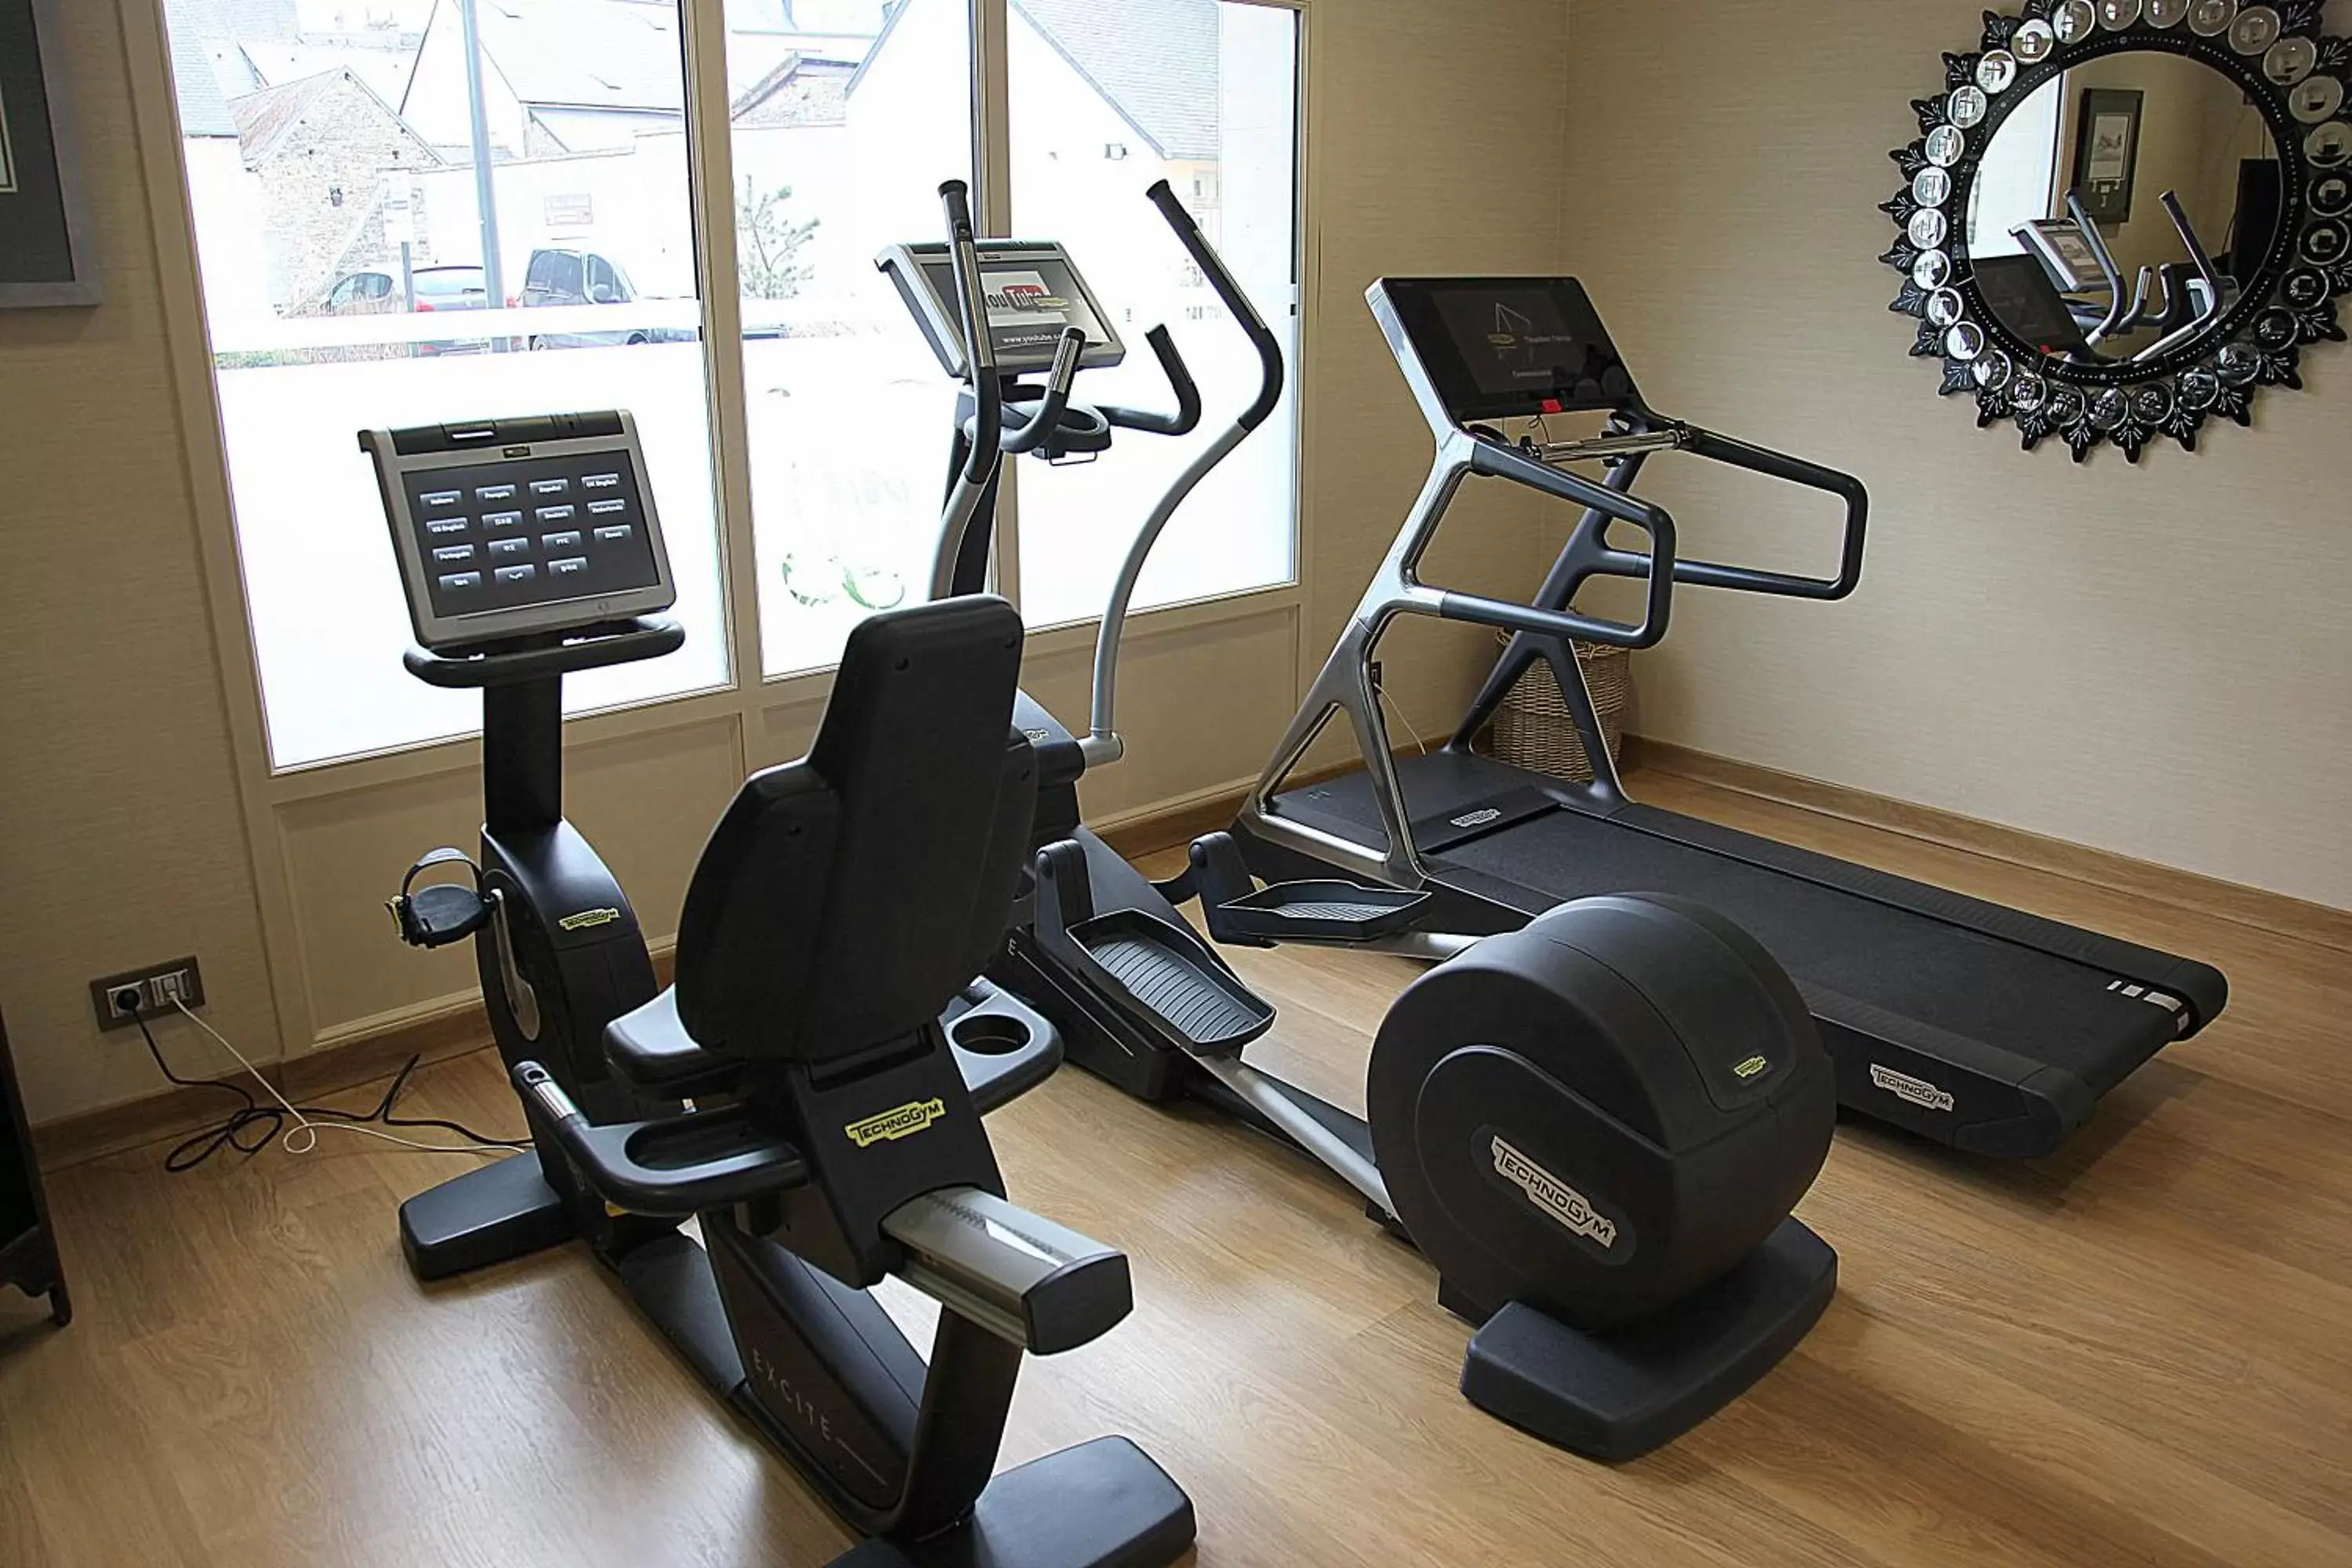 Fitness centre/facilities, Fitness Center/Facilities in Villa Lara Hotel